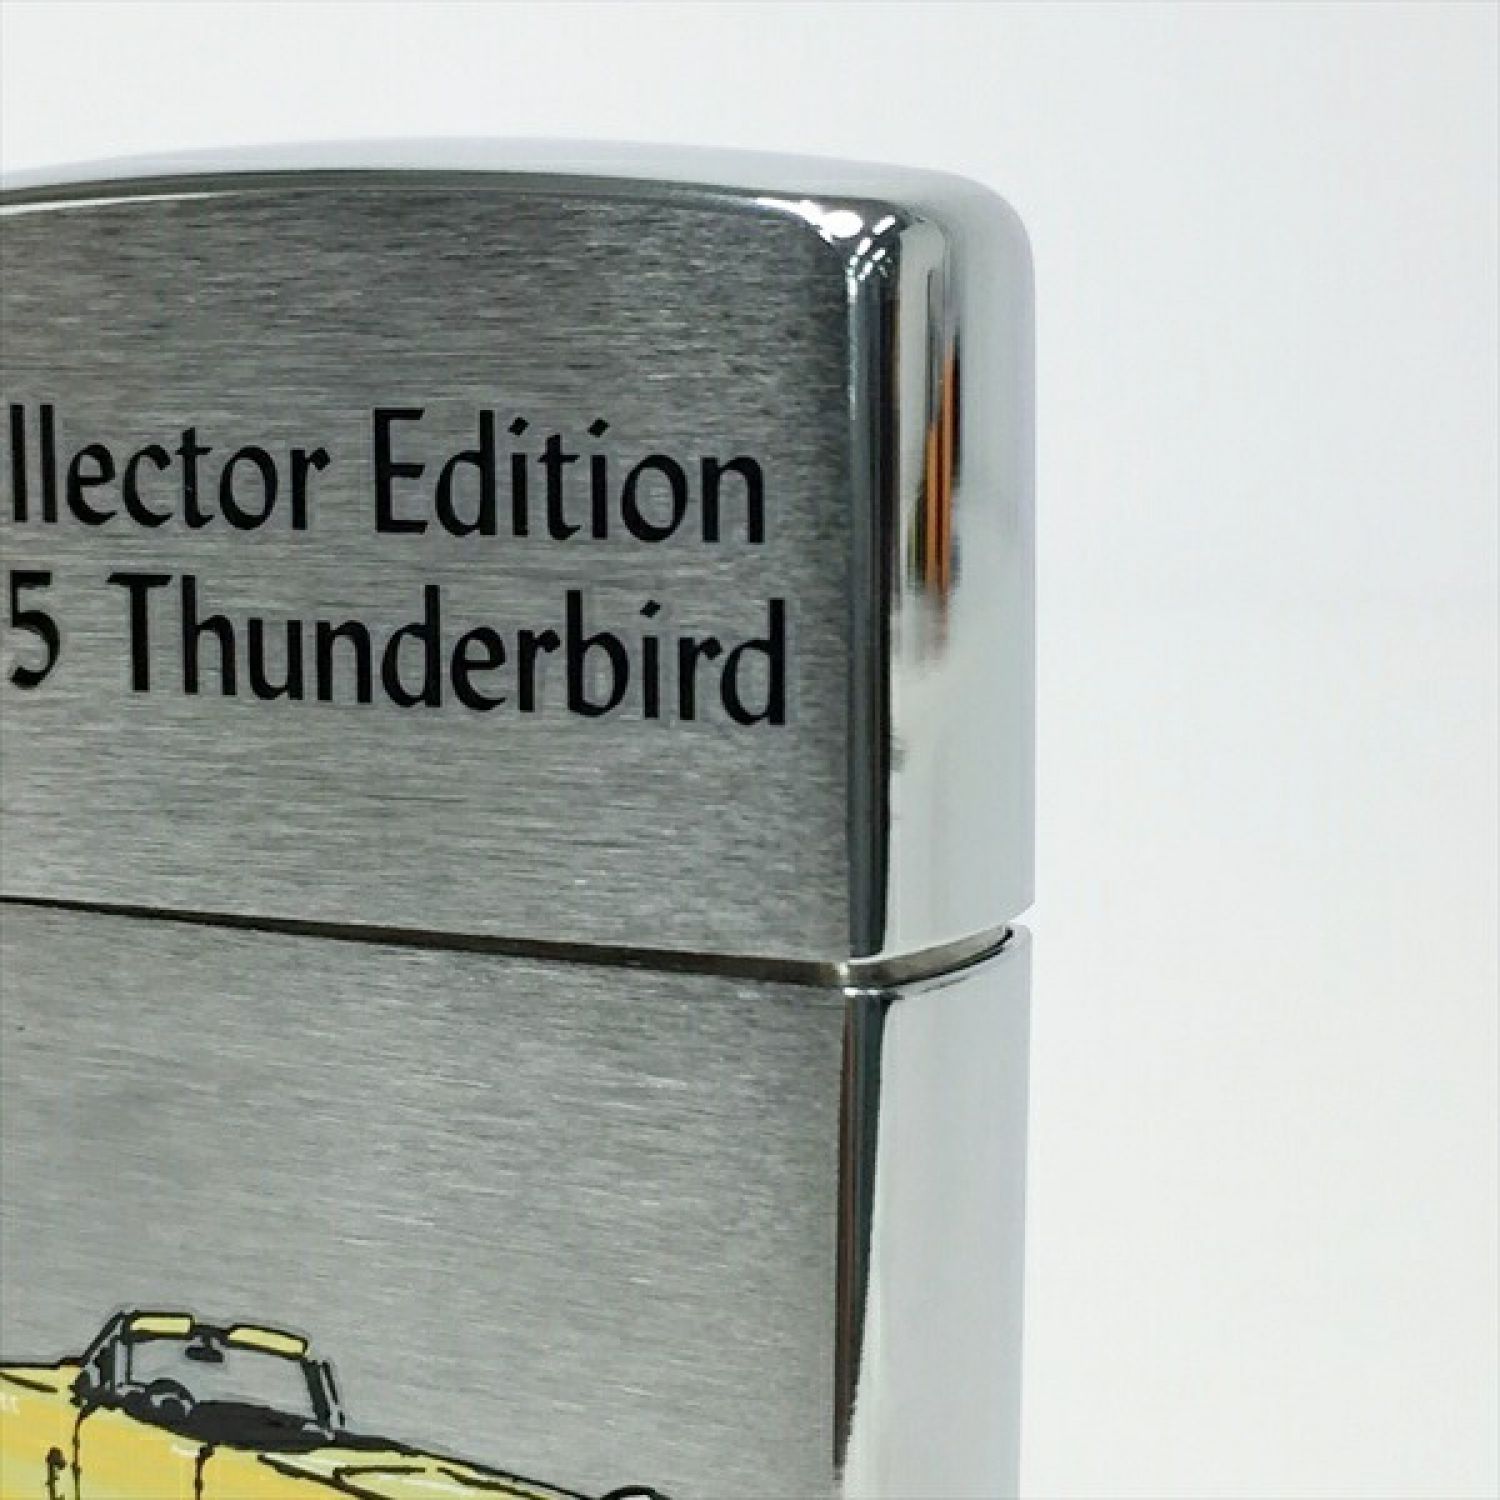 激レア Zippo ジッポ Ford 100周年Thunderbird